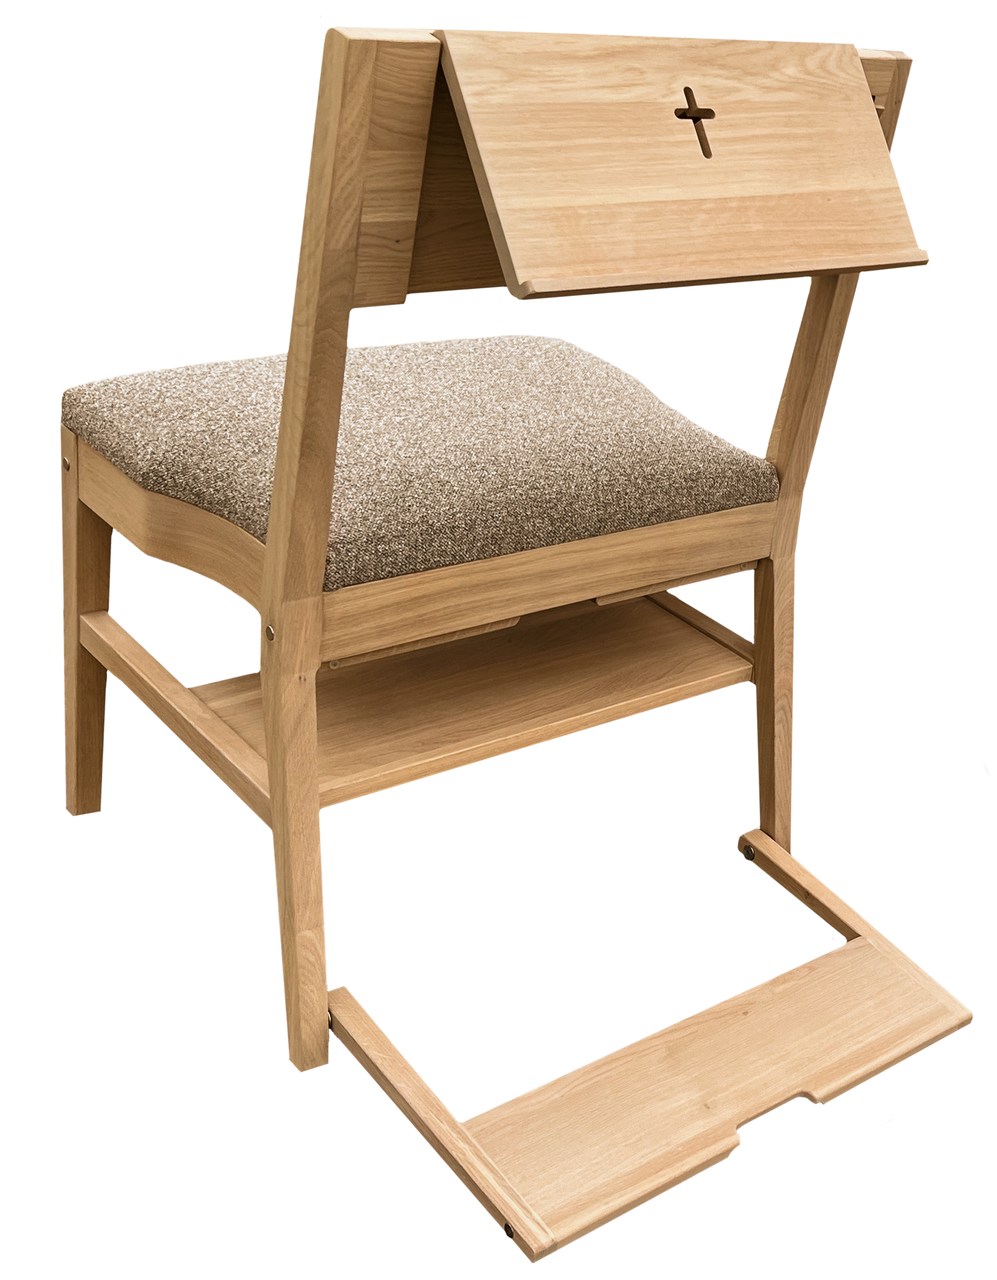 Eikenhouten kerkstoel ZOE met een compleet assortiment accessoires — katheder, haak, knielbank, verbindingssysteem, plank onder de zitting en bekleding van de zitting